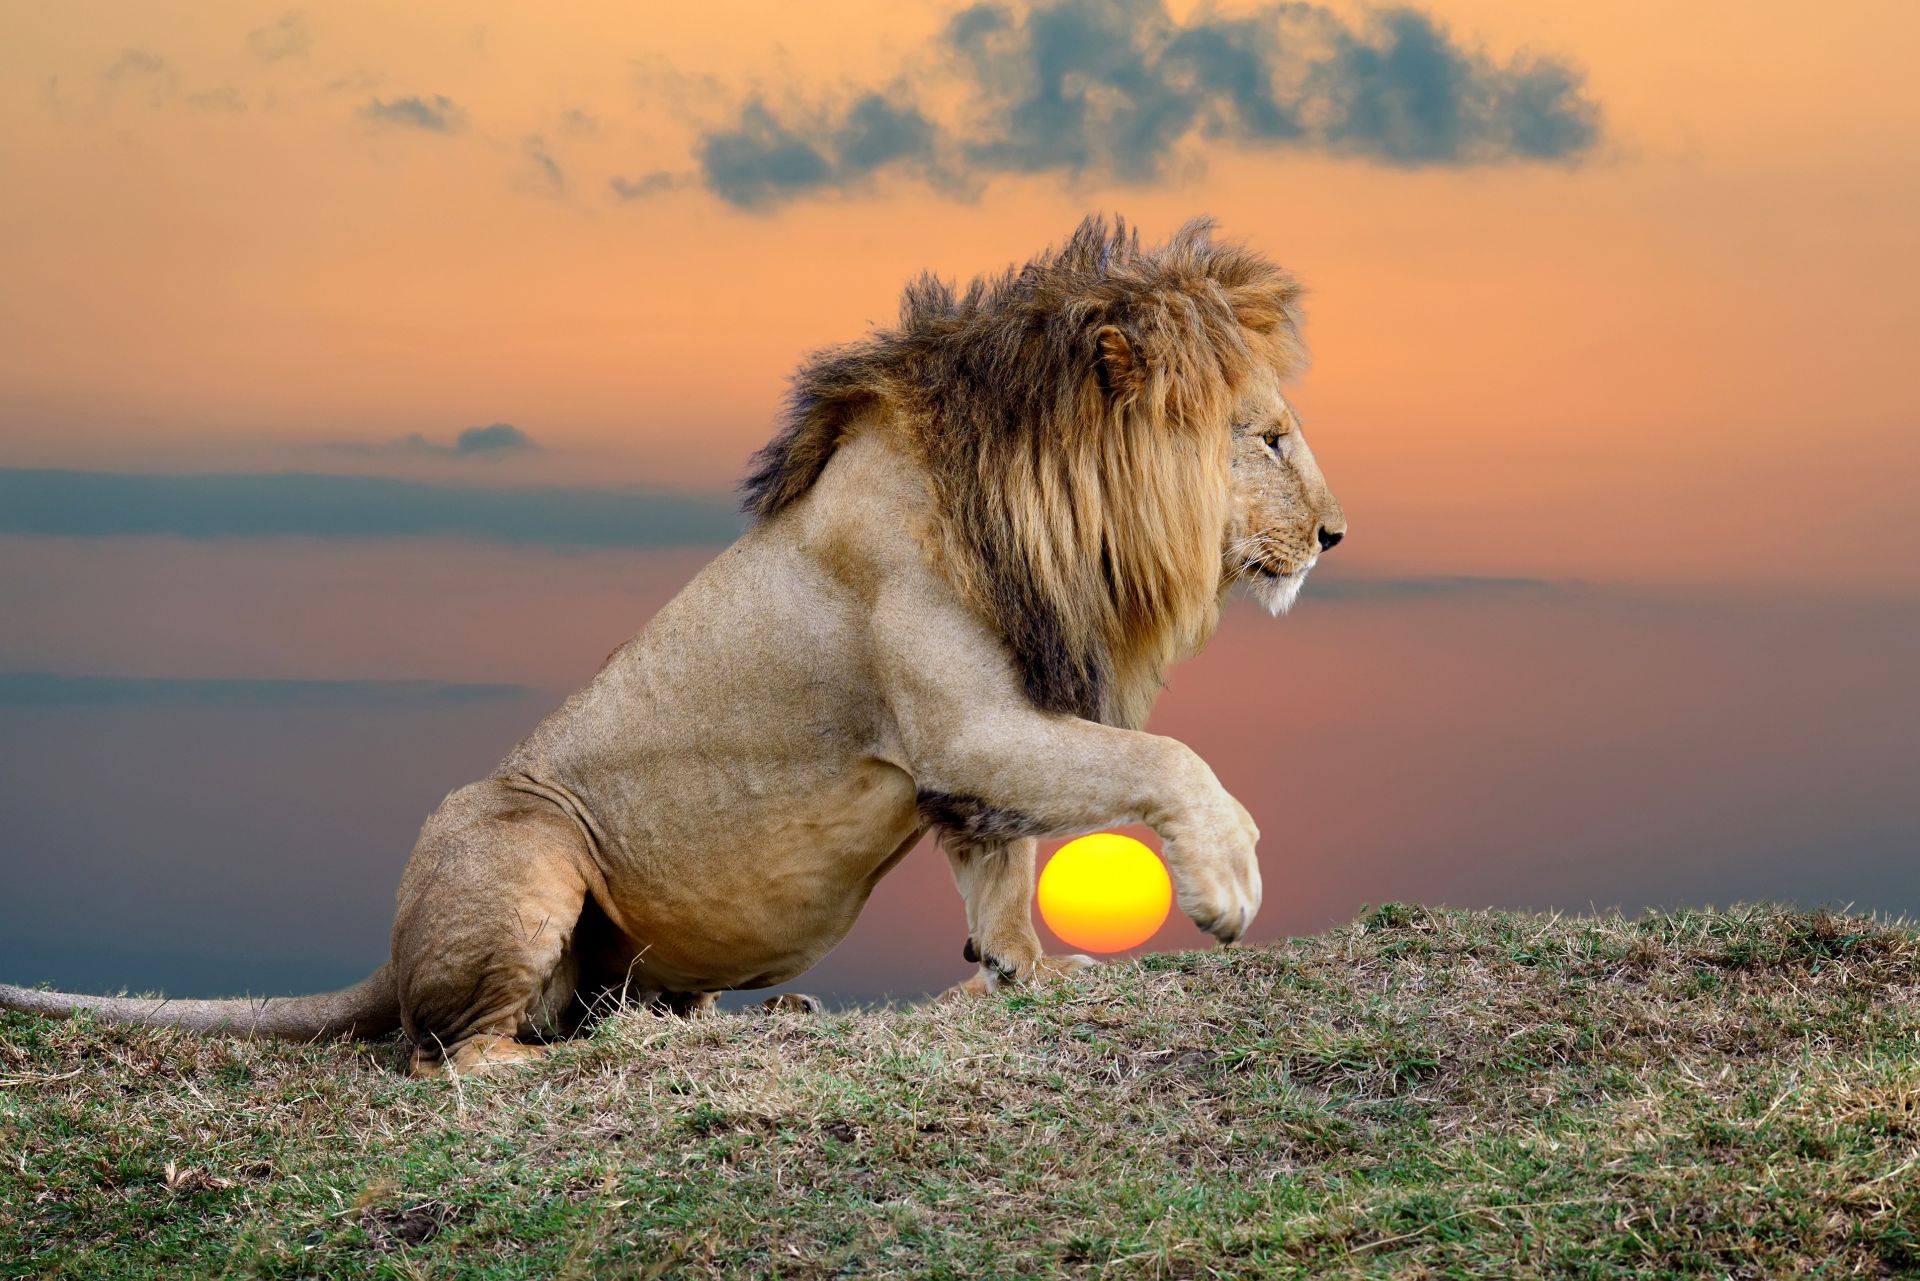 Днешните събрати на гигантския лъв са 7 пъти по-малки